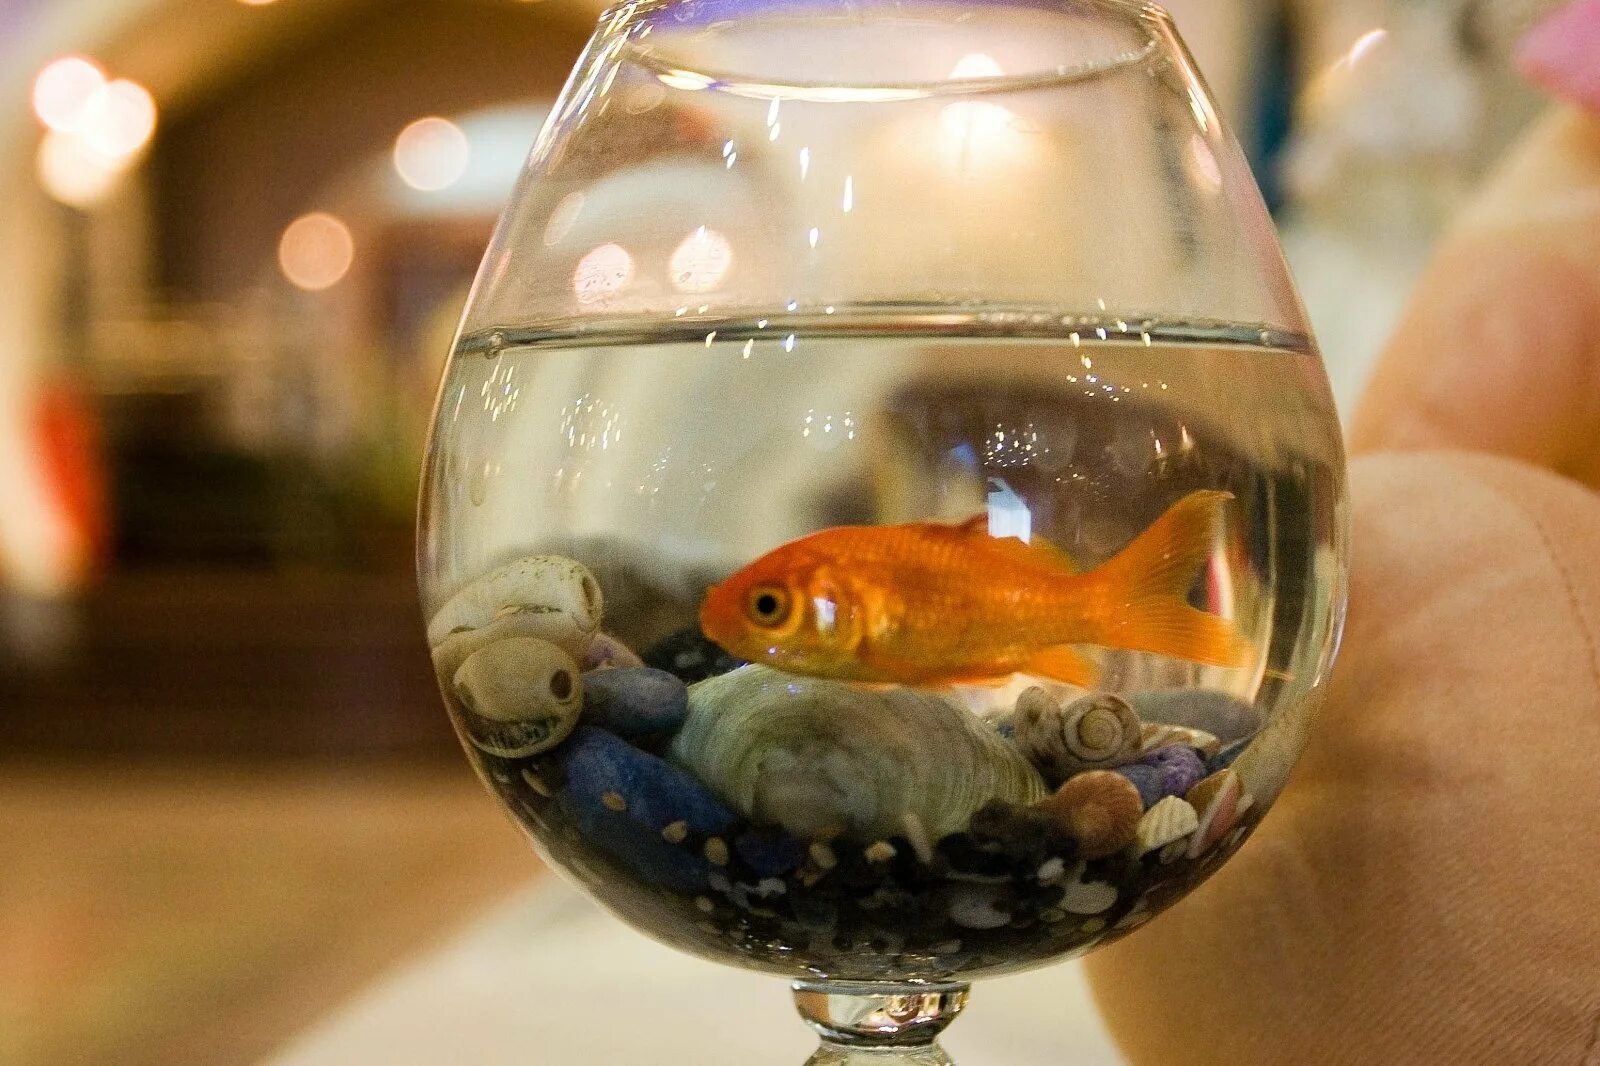 Какие рыбки едят. Круглый аквариум с рыбками. Золотая рыбка в аквариуме. Рыба в круглом аквариуме. Одна рыбка в круглом аквариуме.